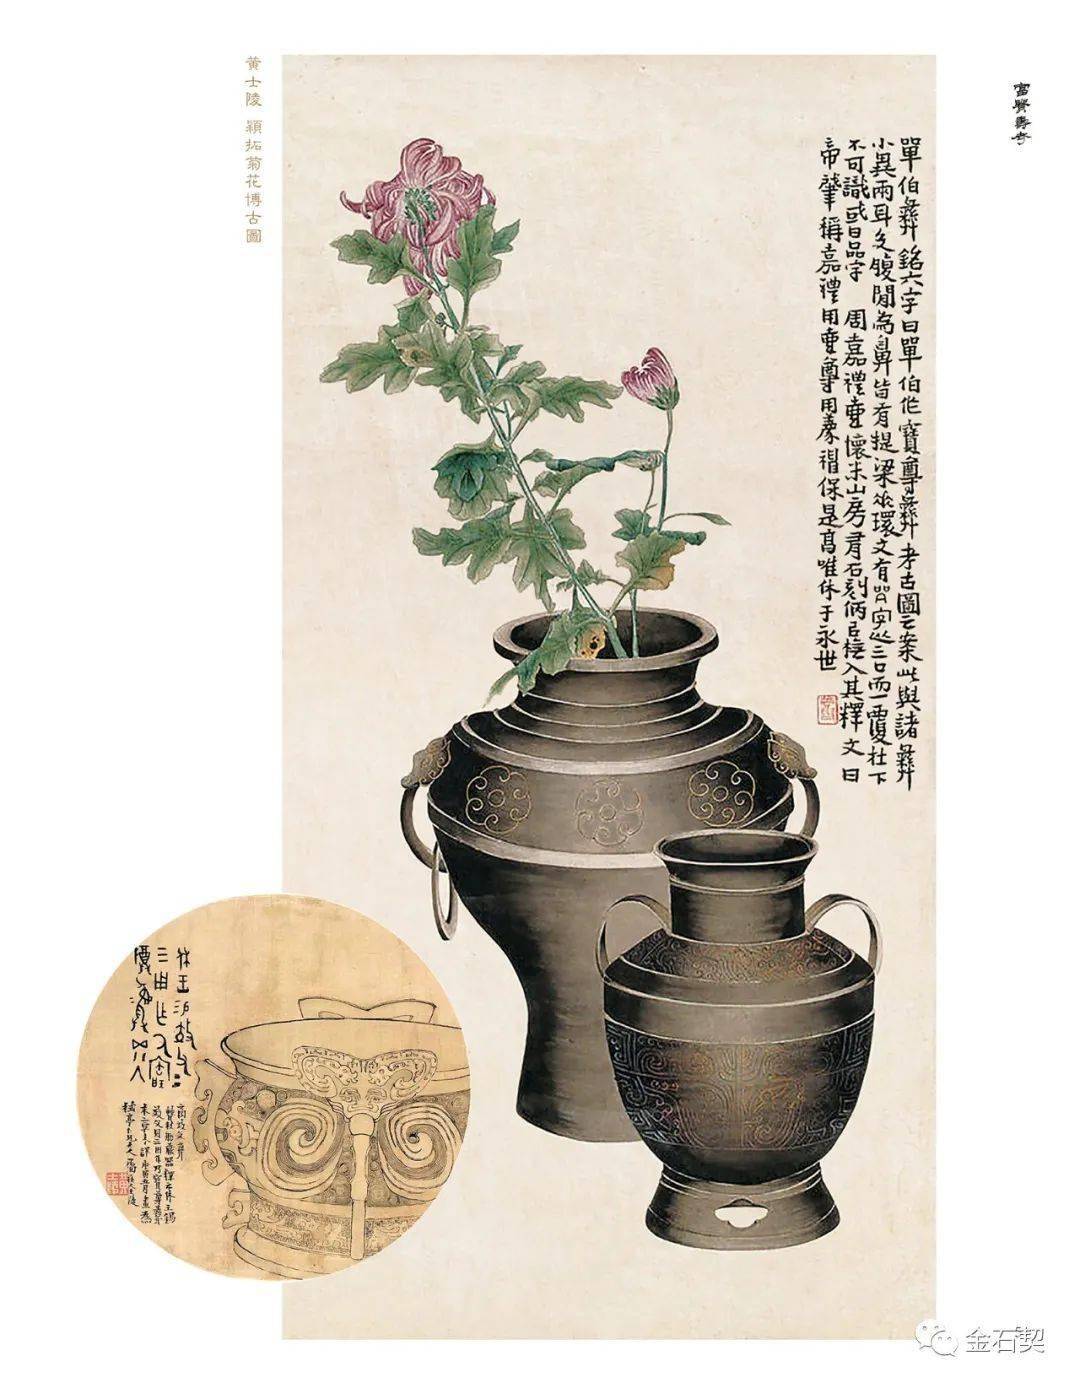 全国首部金石博古画专著 |《富贵寿考——中国金石博古画图说》出版